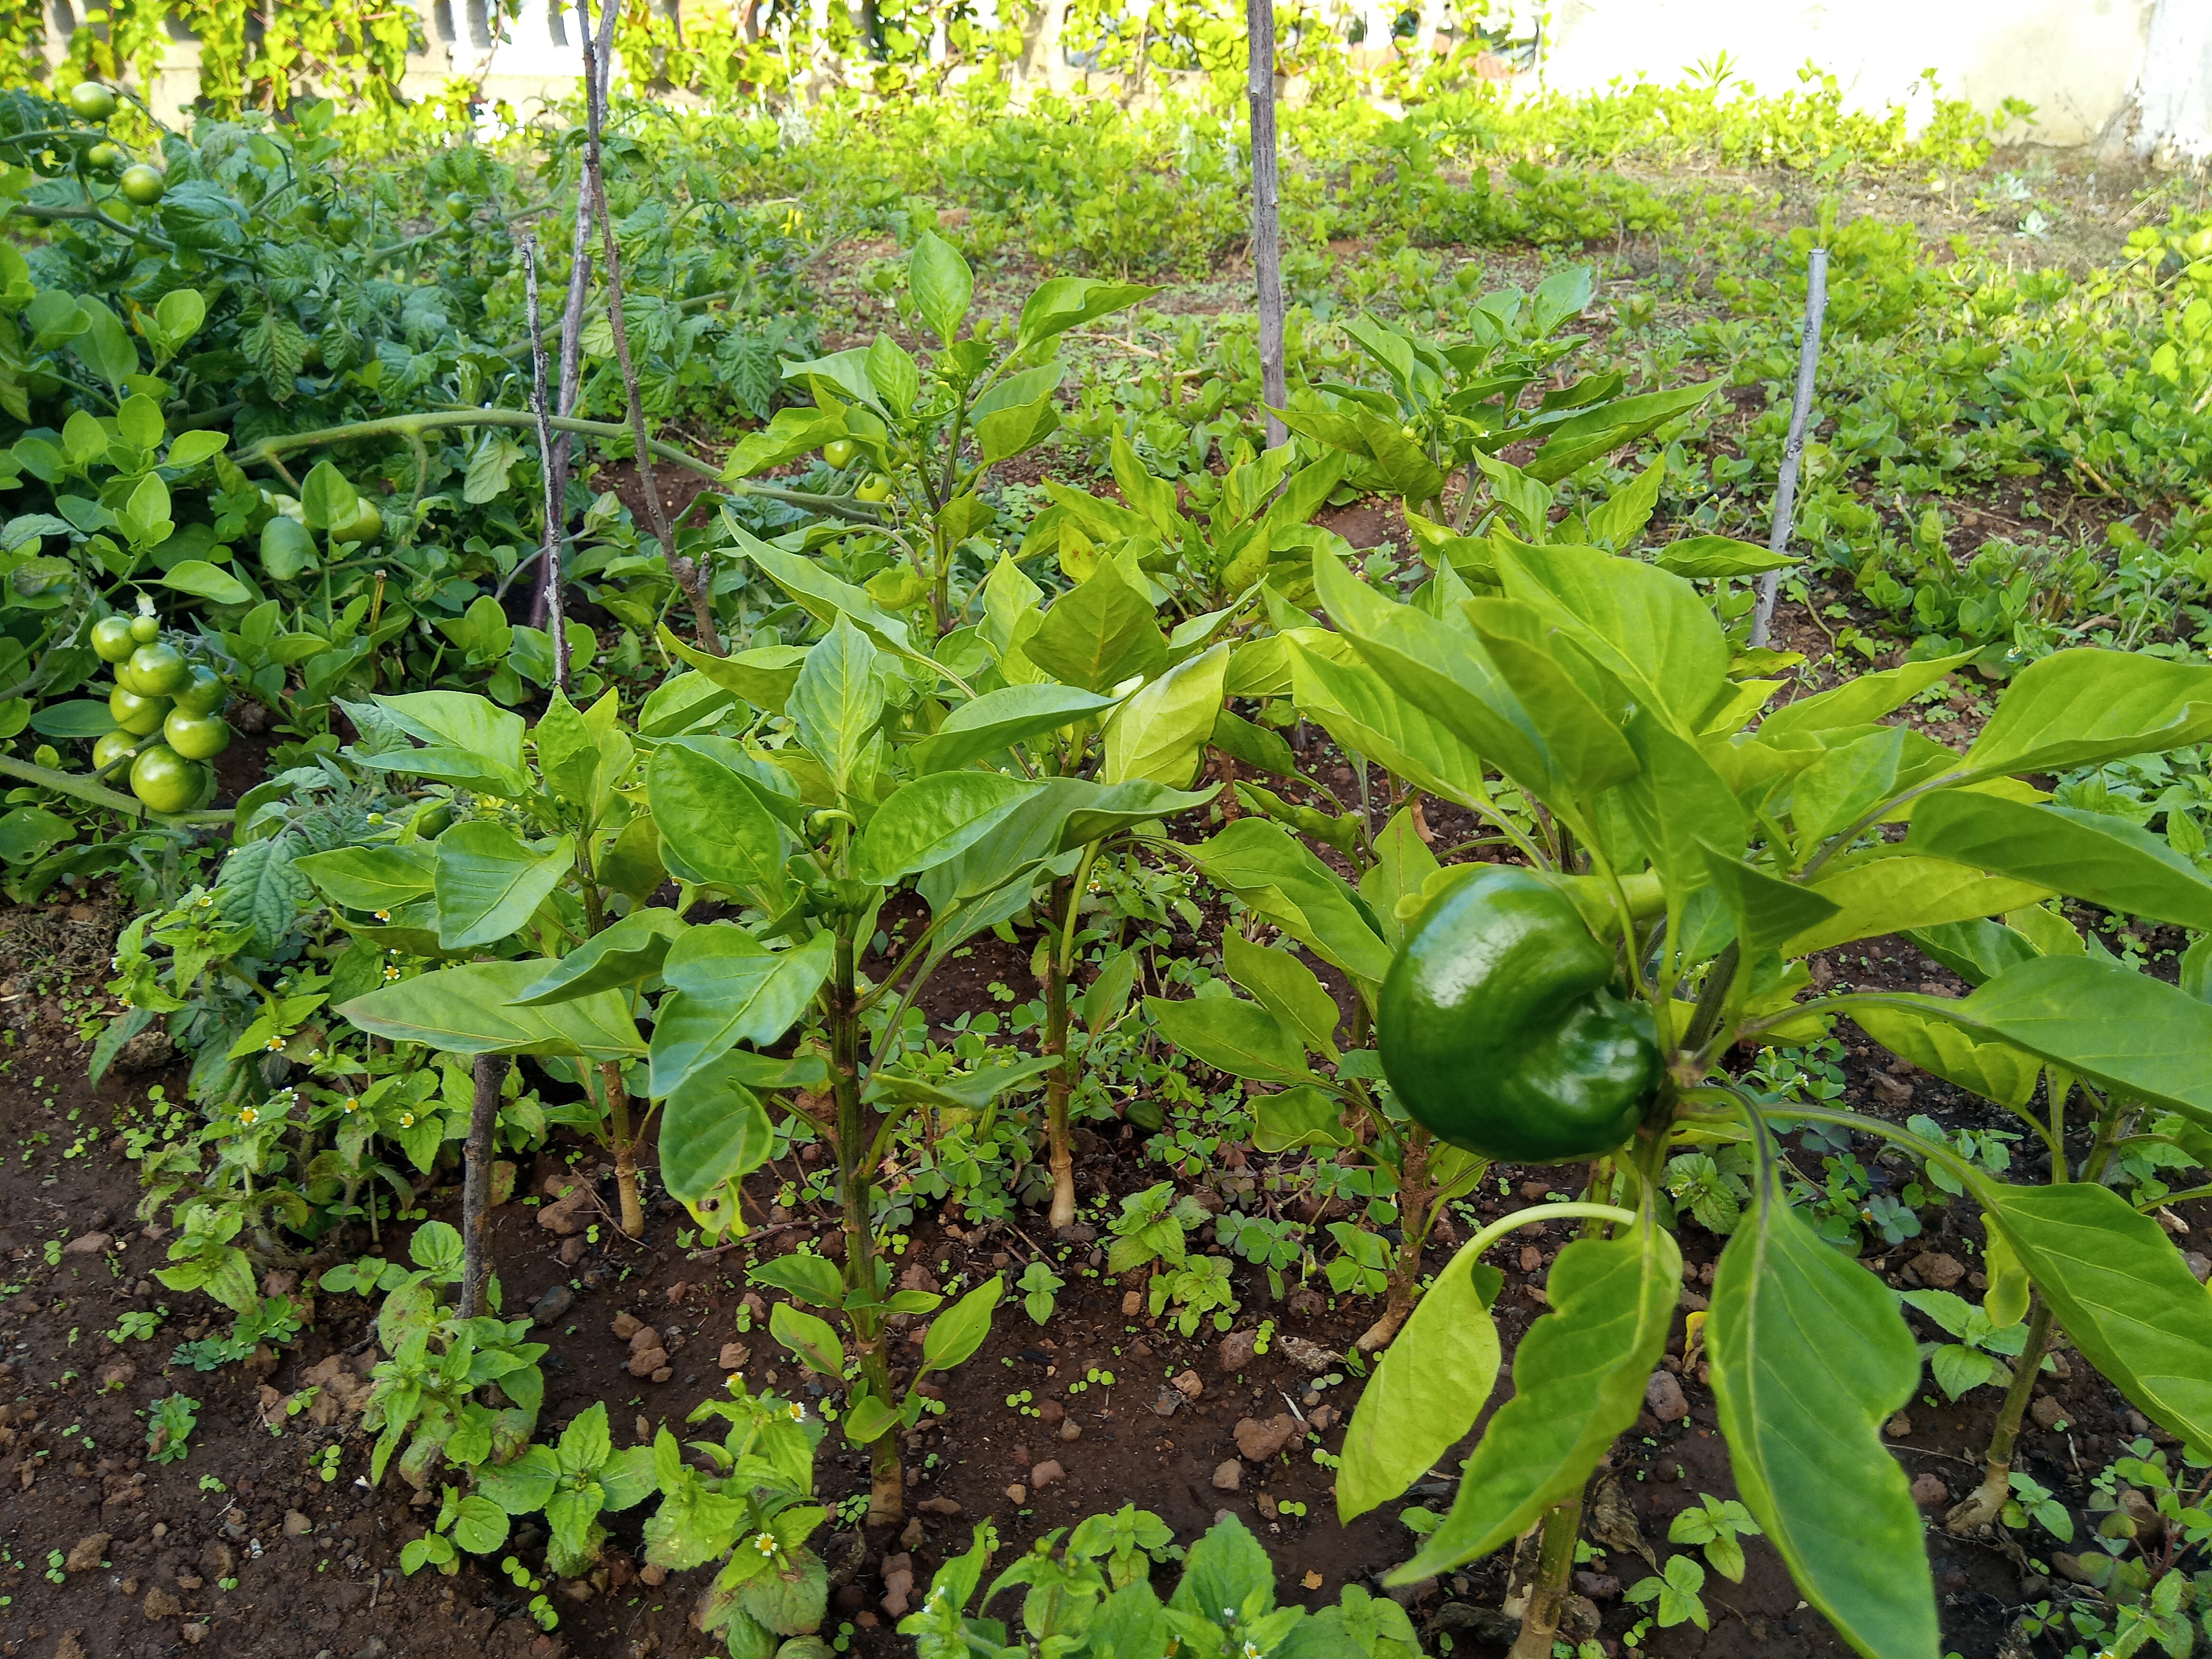 Bell pepper growing